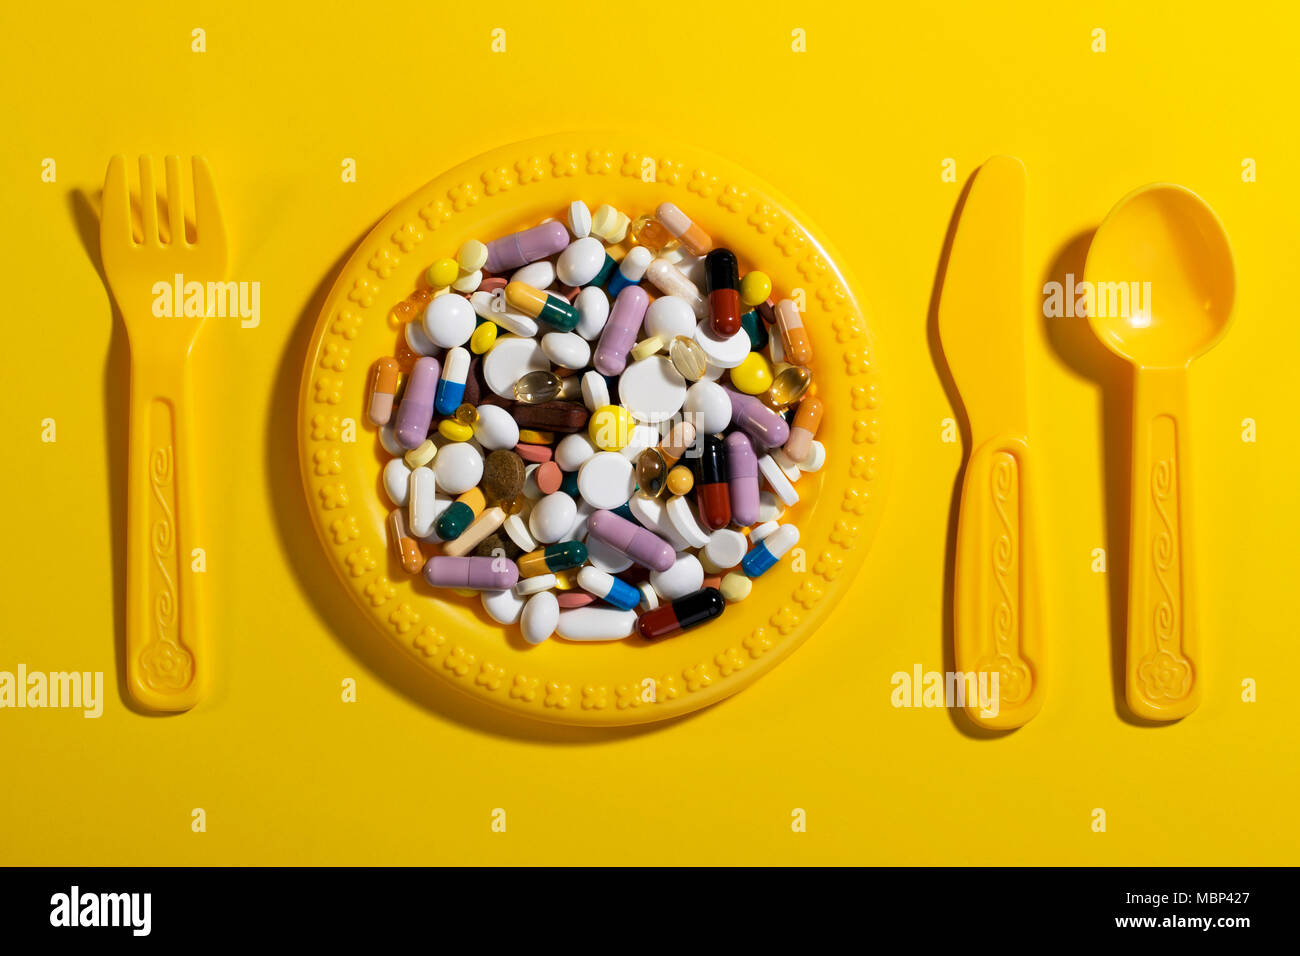 La plaque de l'enfant avec de la vaisselle rempli de pilules colorées. En cas de surdosage Concept médicaments dans le régime alimentaire des enfants. Banque D'Images